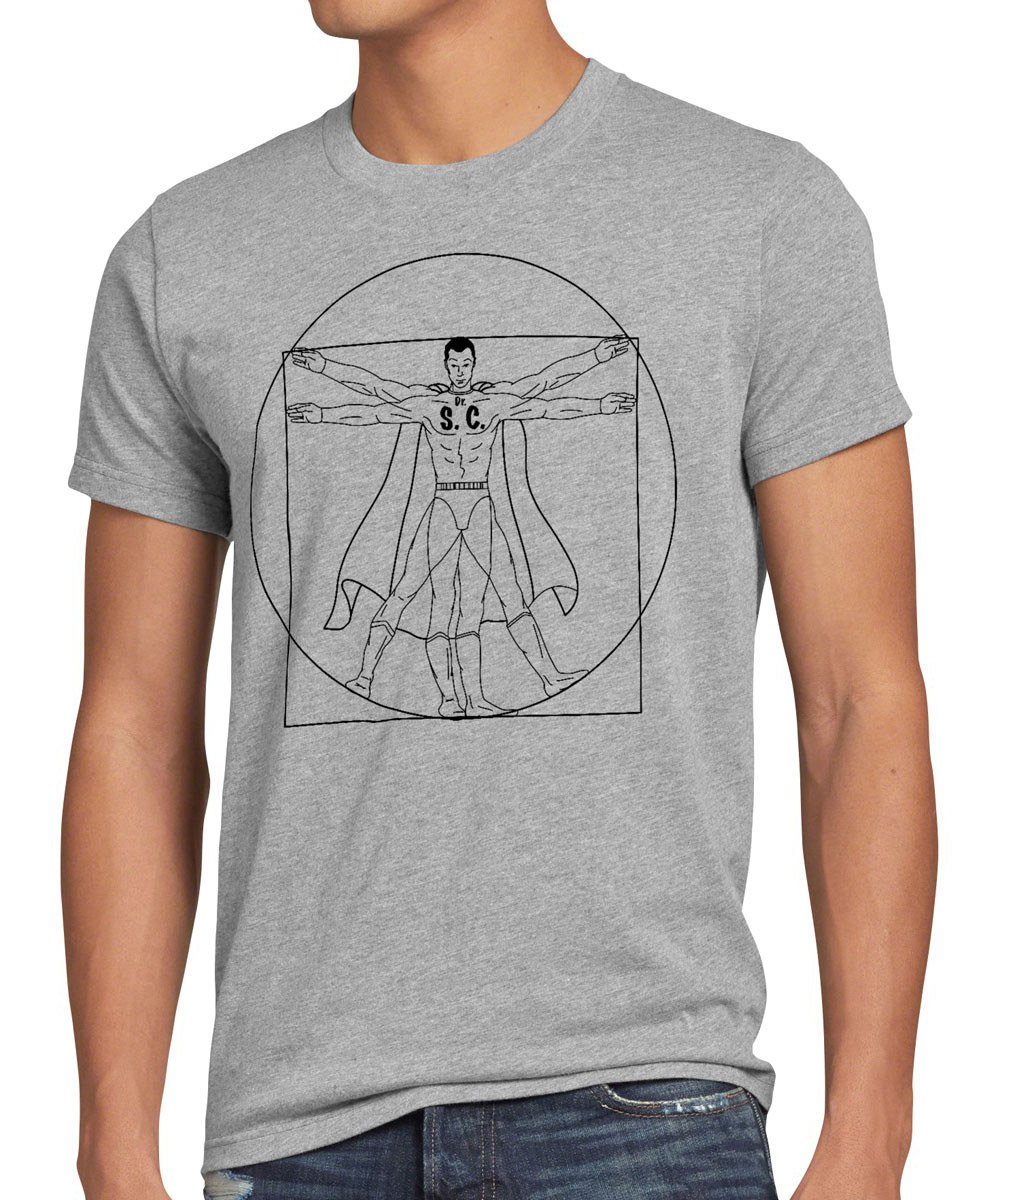 style3 Print-Shirt Herren T-Shirt Sheldon theory Da Vinci Cooper big bang Vitruvianischer Mensch grau meliert